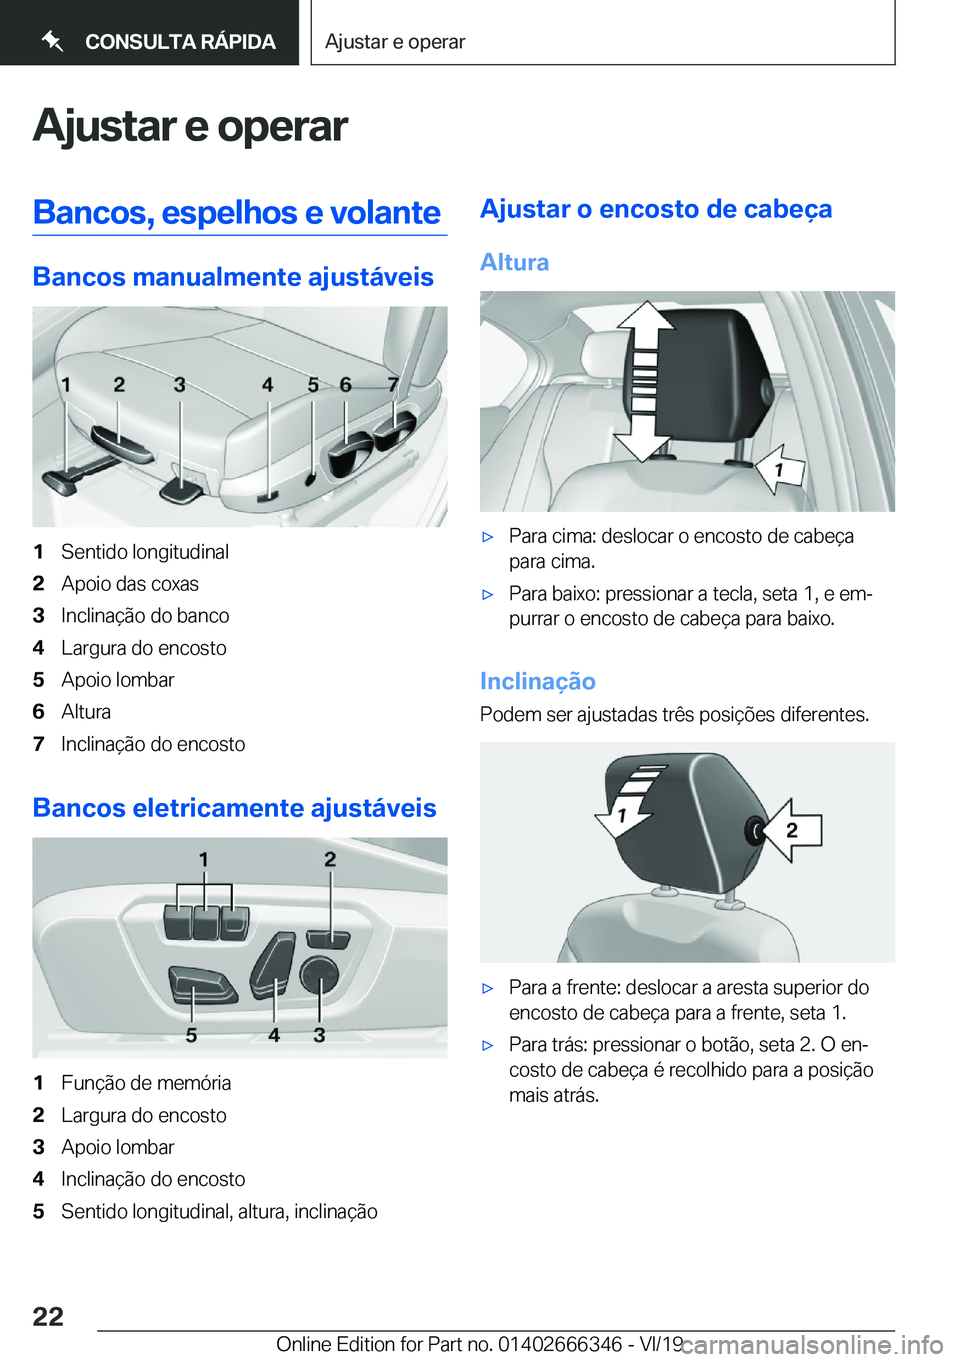 BMW 4 SERIES COUPE 2020  Manual do condutor (in Portuguese) �A�j�u�s�t�a�r��e��o�p�e�r�a�r�B�a�n�c�o�s�,��e�s�p�e�l�h�o�s��e��v�o�l�a�n�t�e
�B�a�n�c�o�s��m�a�n�u�a�l�m�e�n�t�e��a�j�u�s�t�á�v�e�i�s
�1�S�e�n�t�i�d�o��l�o�n�g�i�t�u�d�i�n�a�l�2�A�p�o�i�o�